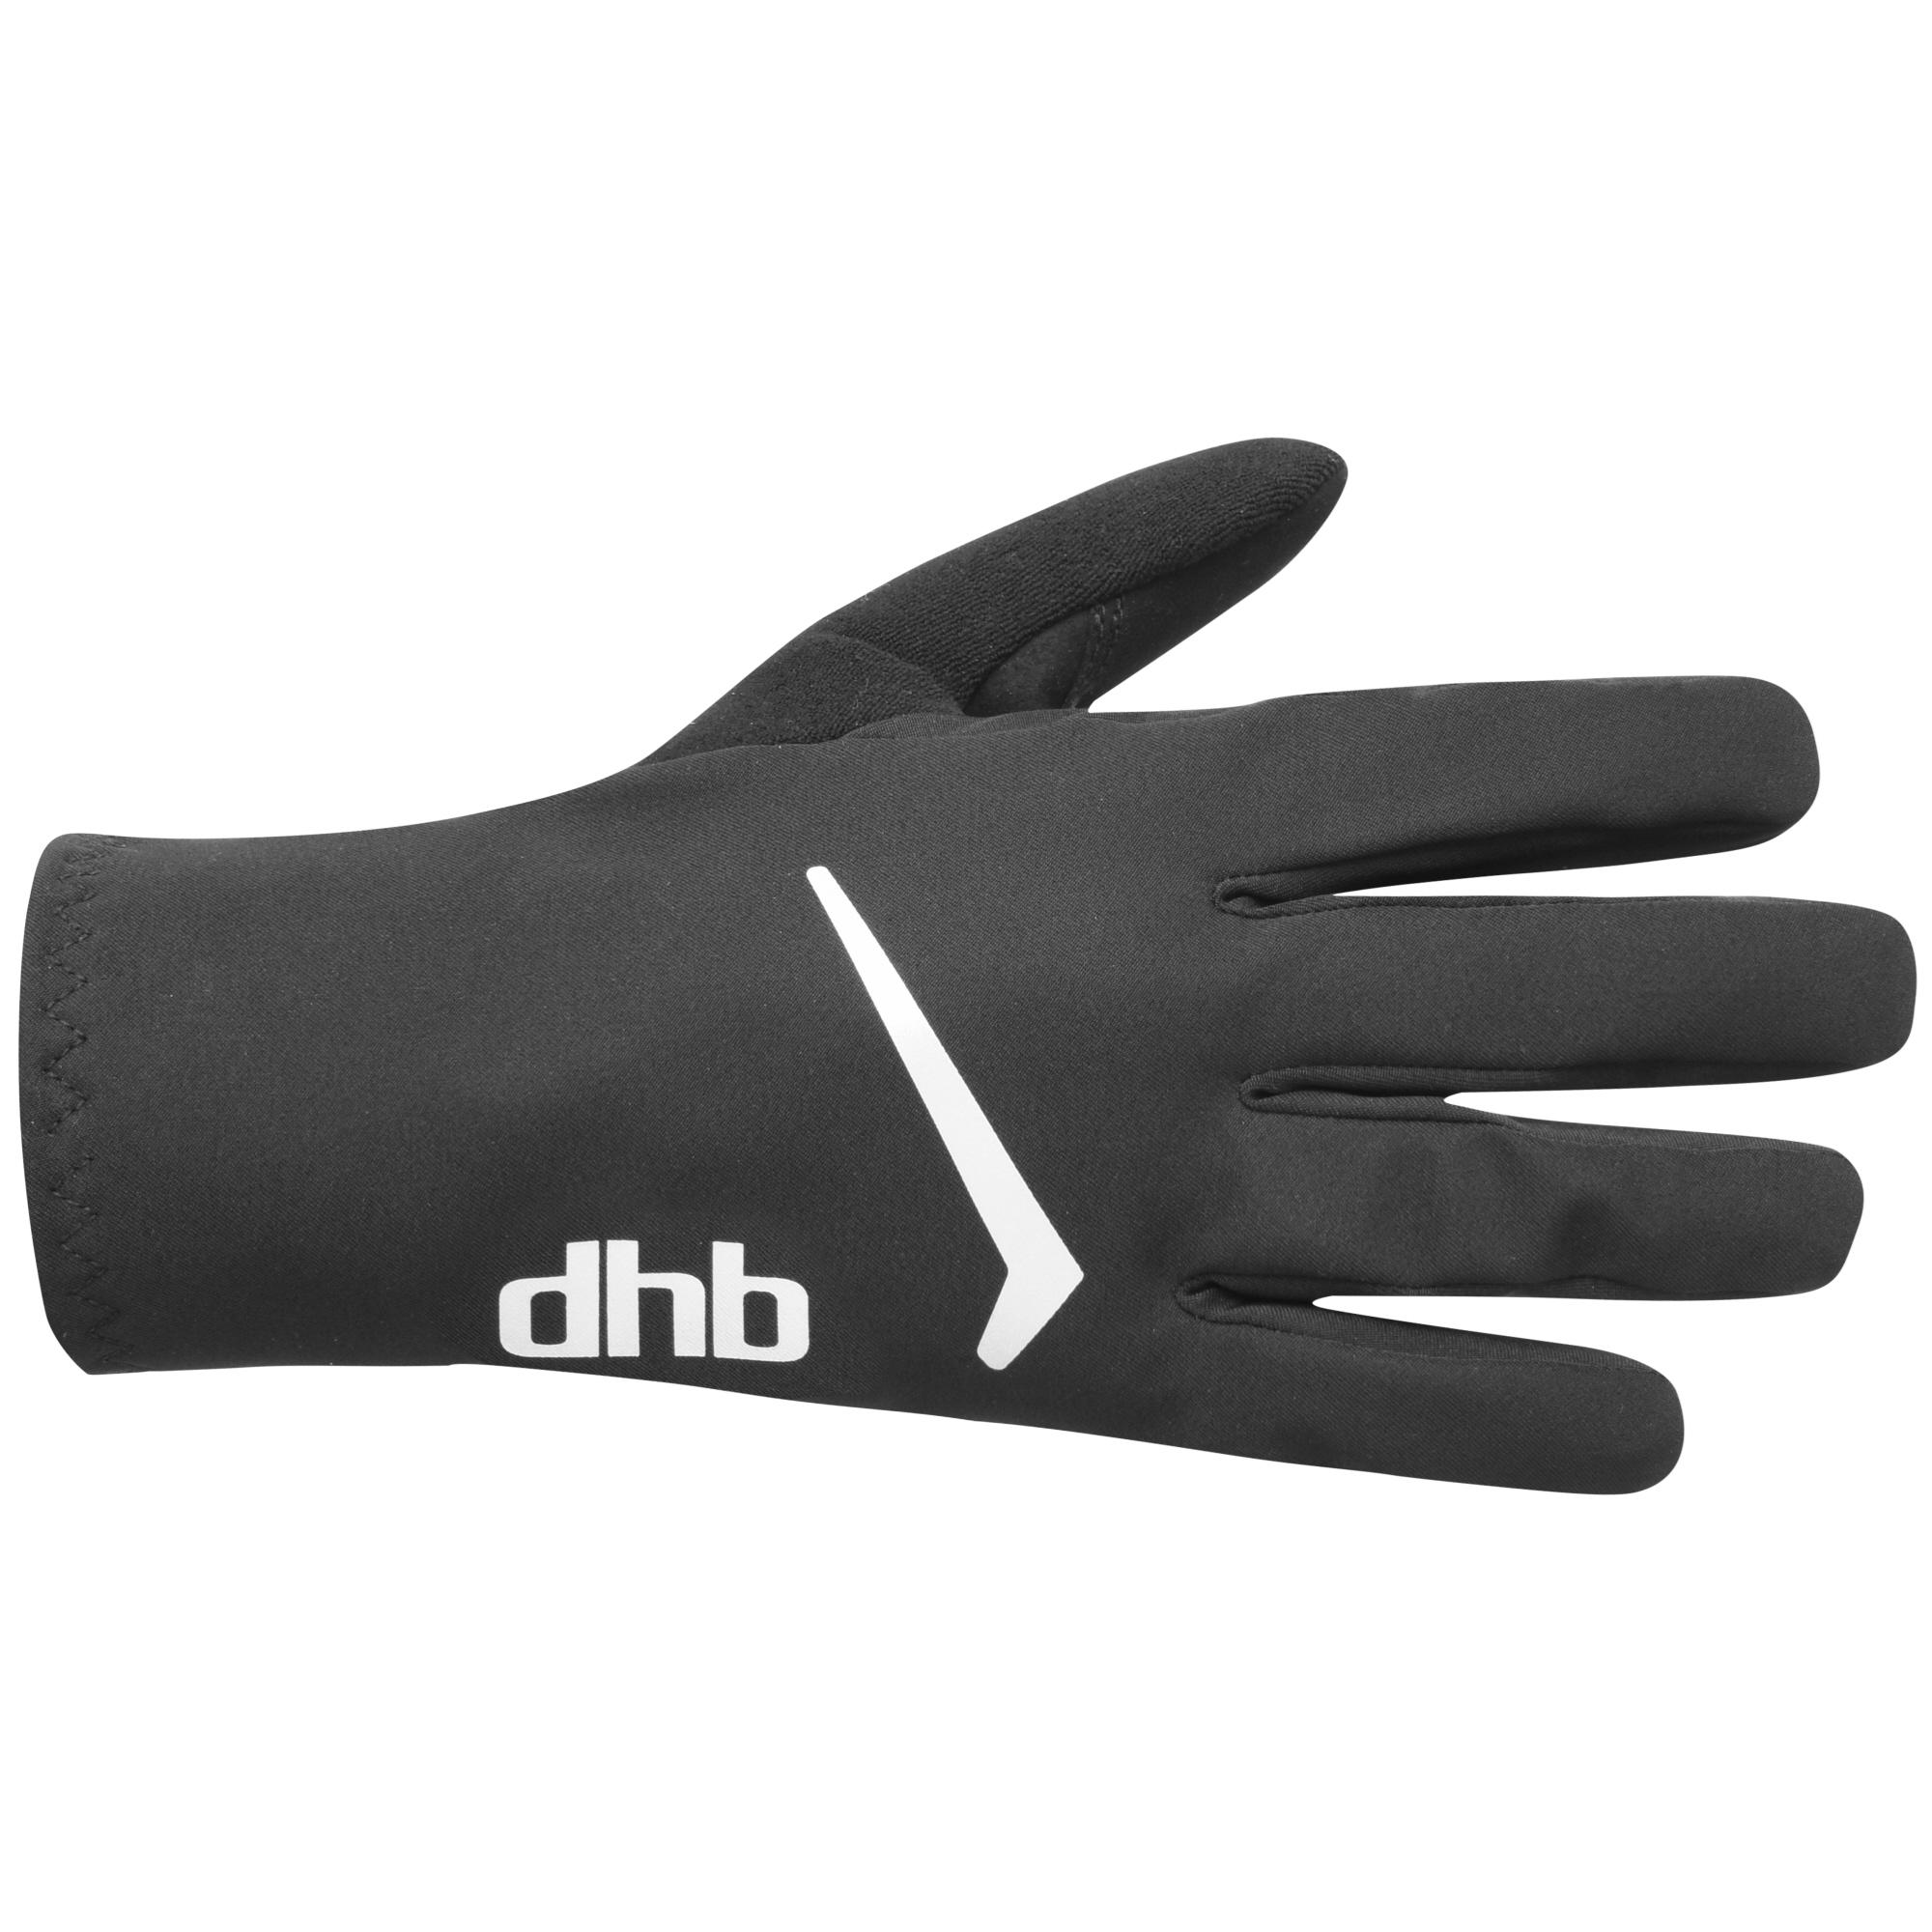 Dhb Waterproof Gloves  Black